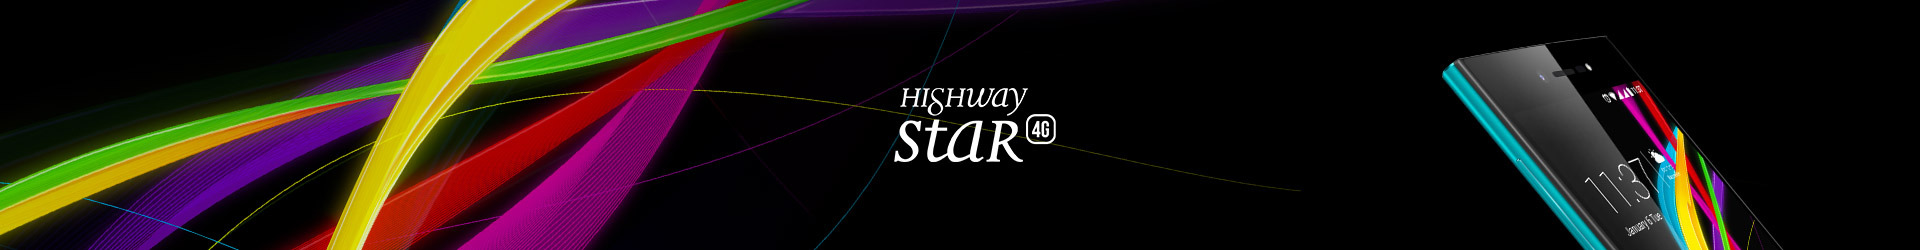 highway_star